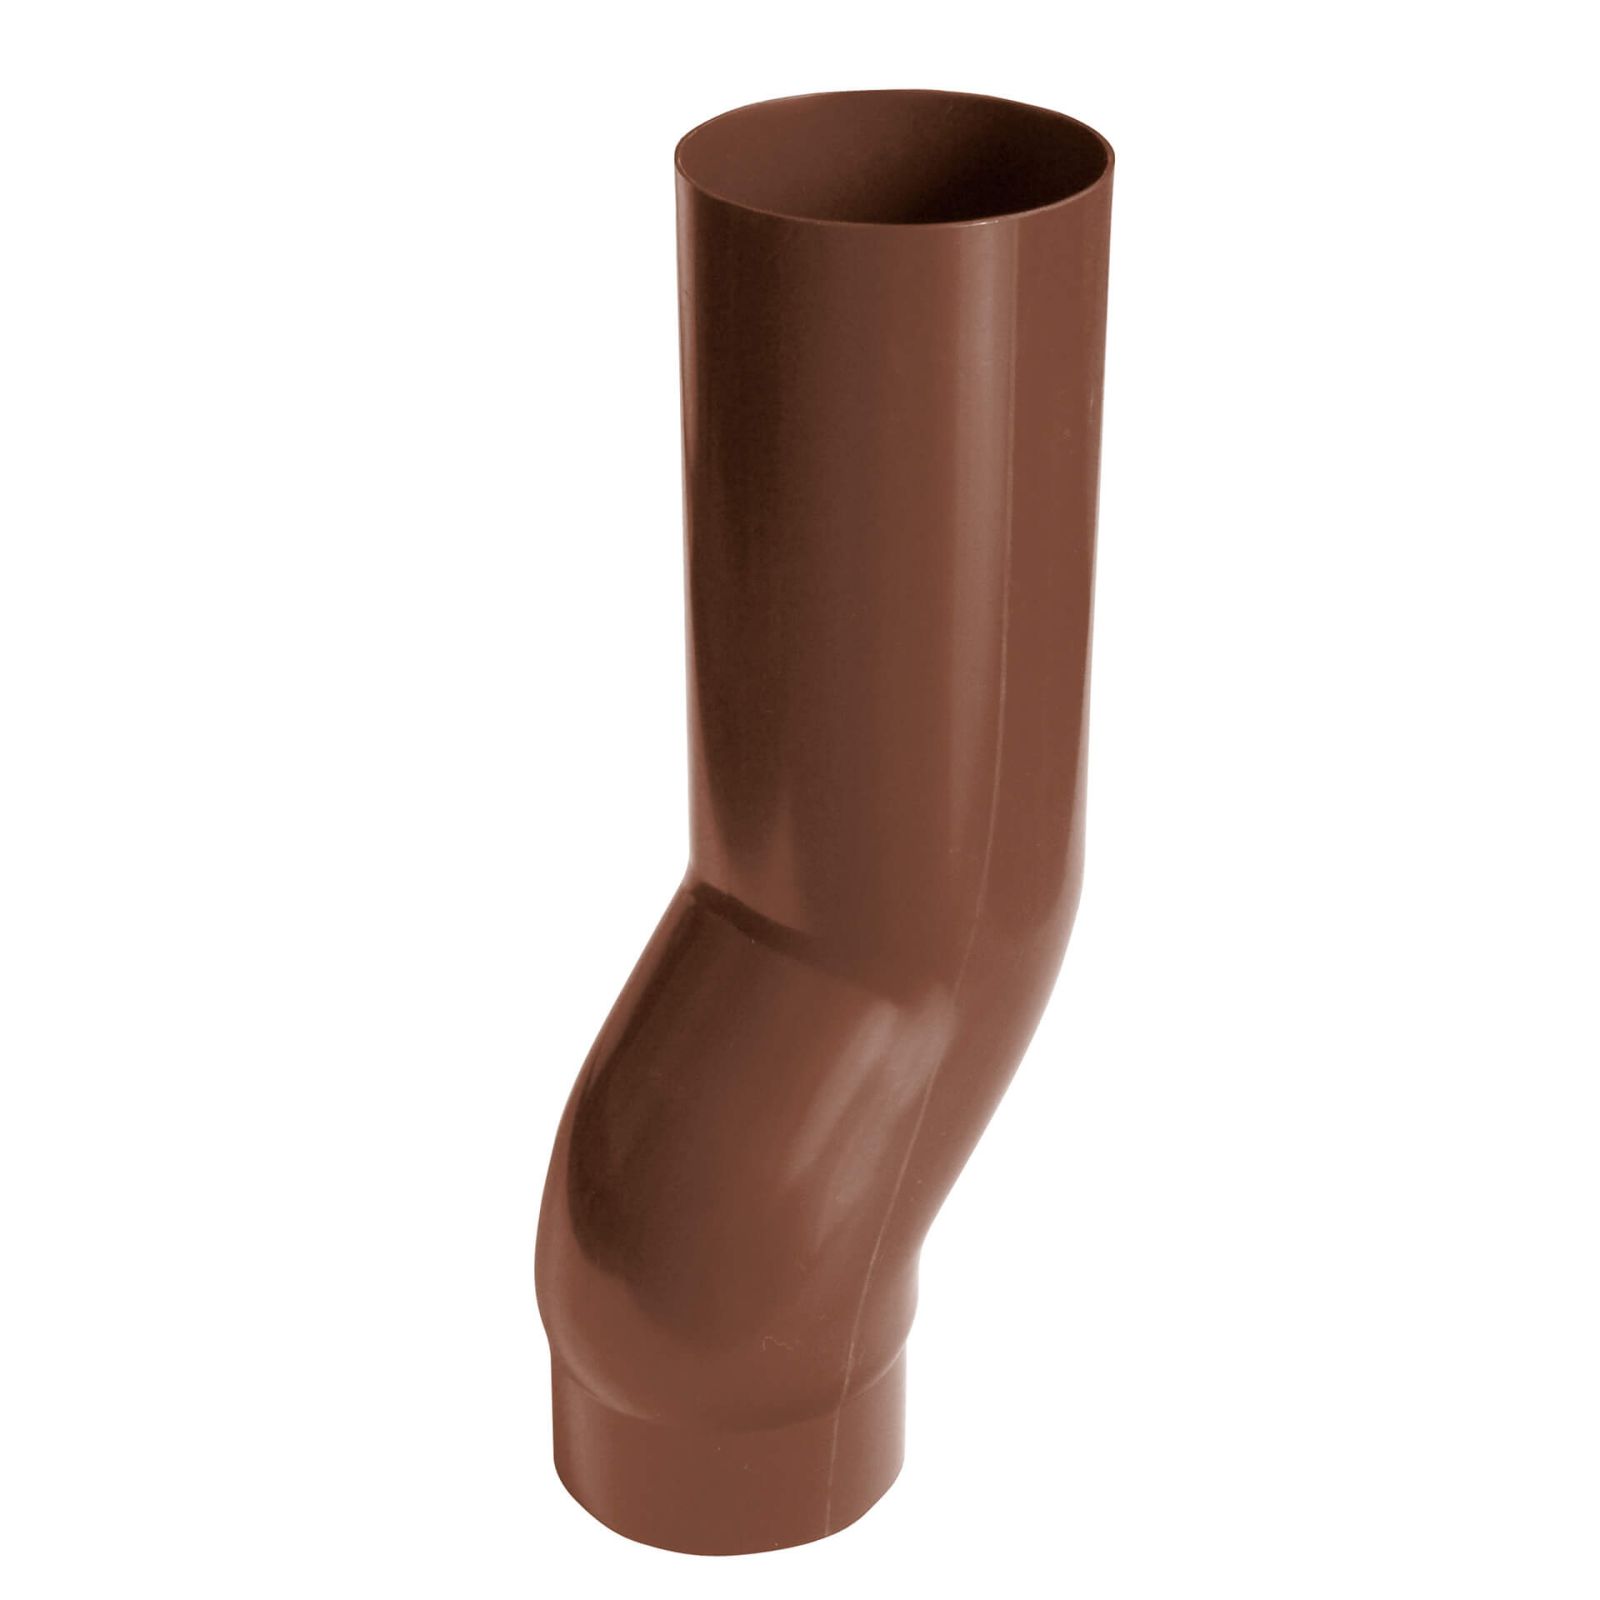 Sockelknie | PVC | Ø 75 mm | Farbe Braun